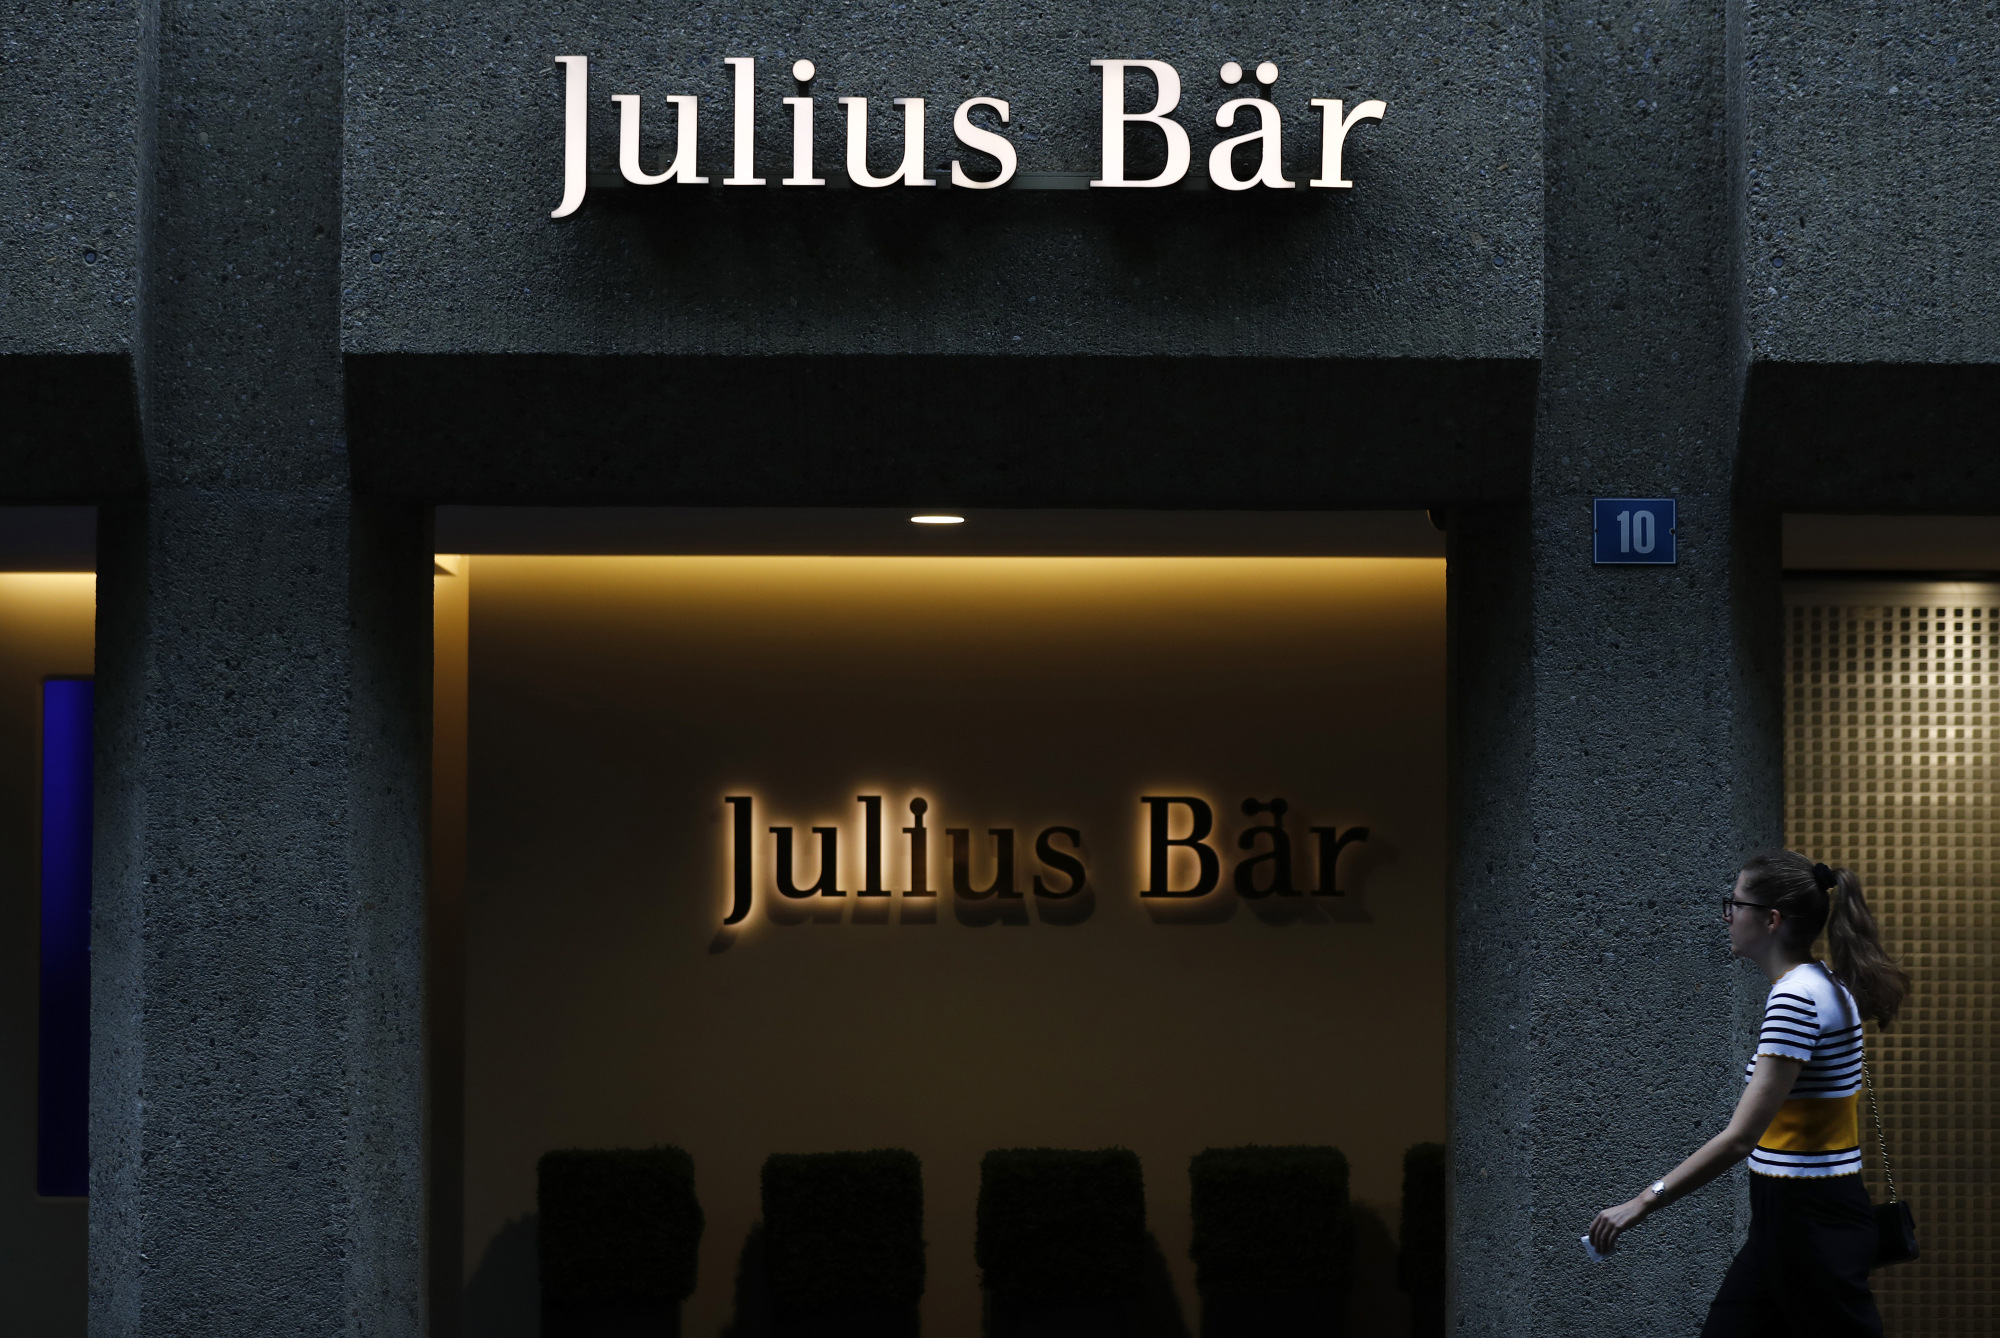 The Julius Baer Group Ltd. headquarters in Zurich, Switzerland.